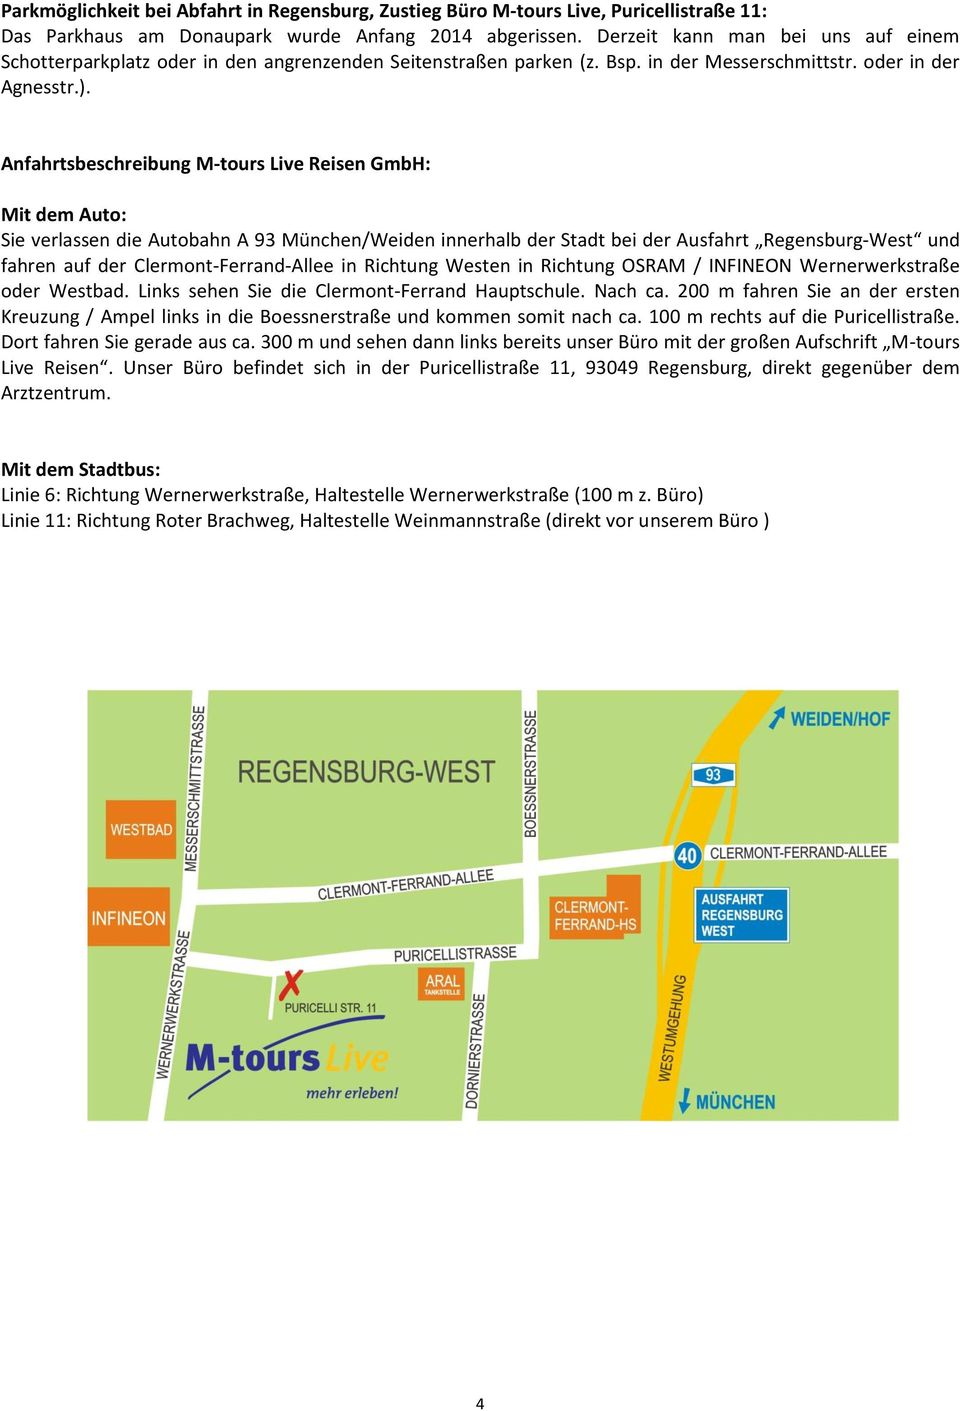 Anfahrtsbeschreibung M-tours Live Reisen GmbH: Mit dem Auto: Sie verlassen die Autobahn A 93 München/Weiden innerhalb der Stadt bei der Ausfahrt Regensburg-West und fahren auf der